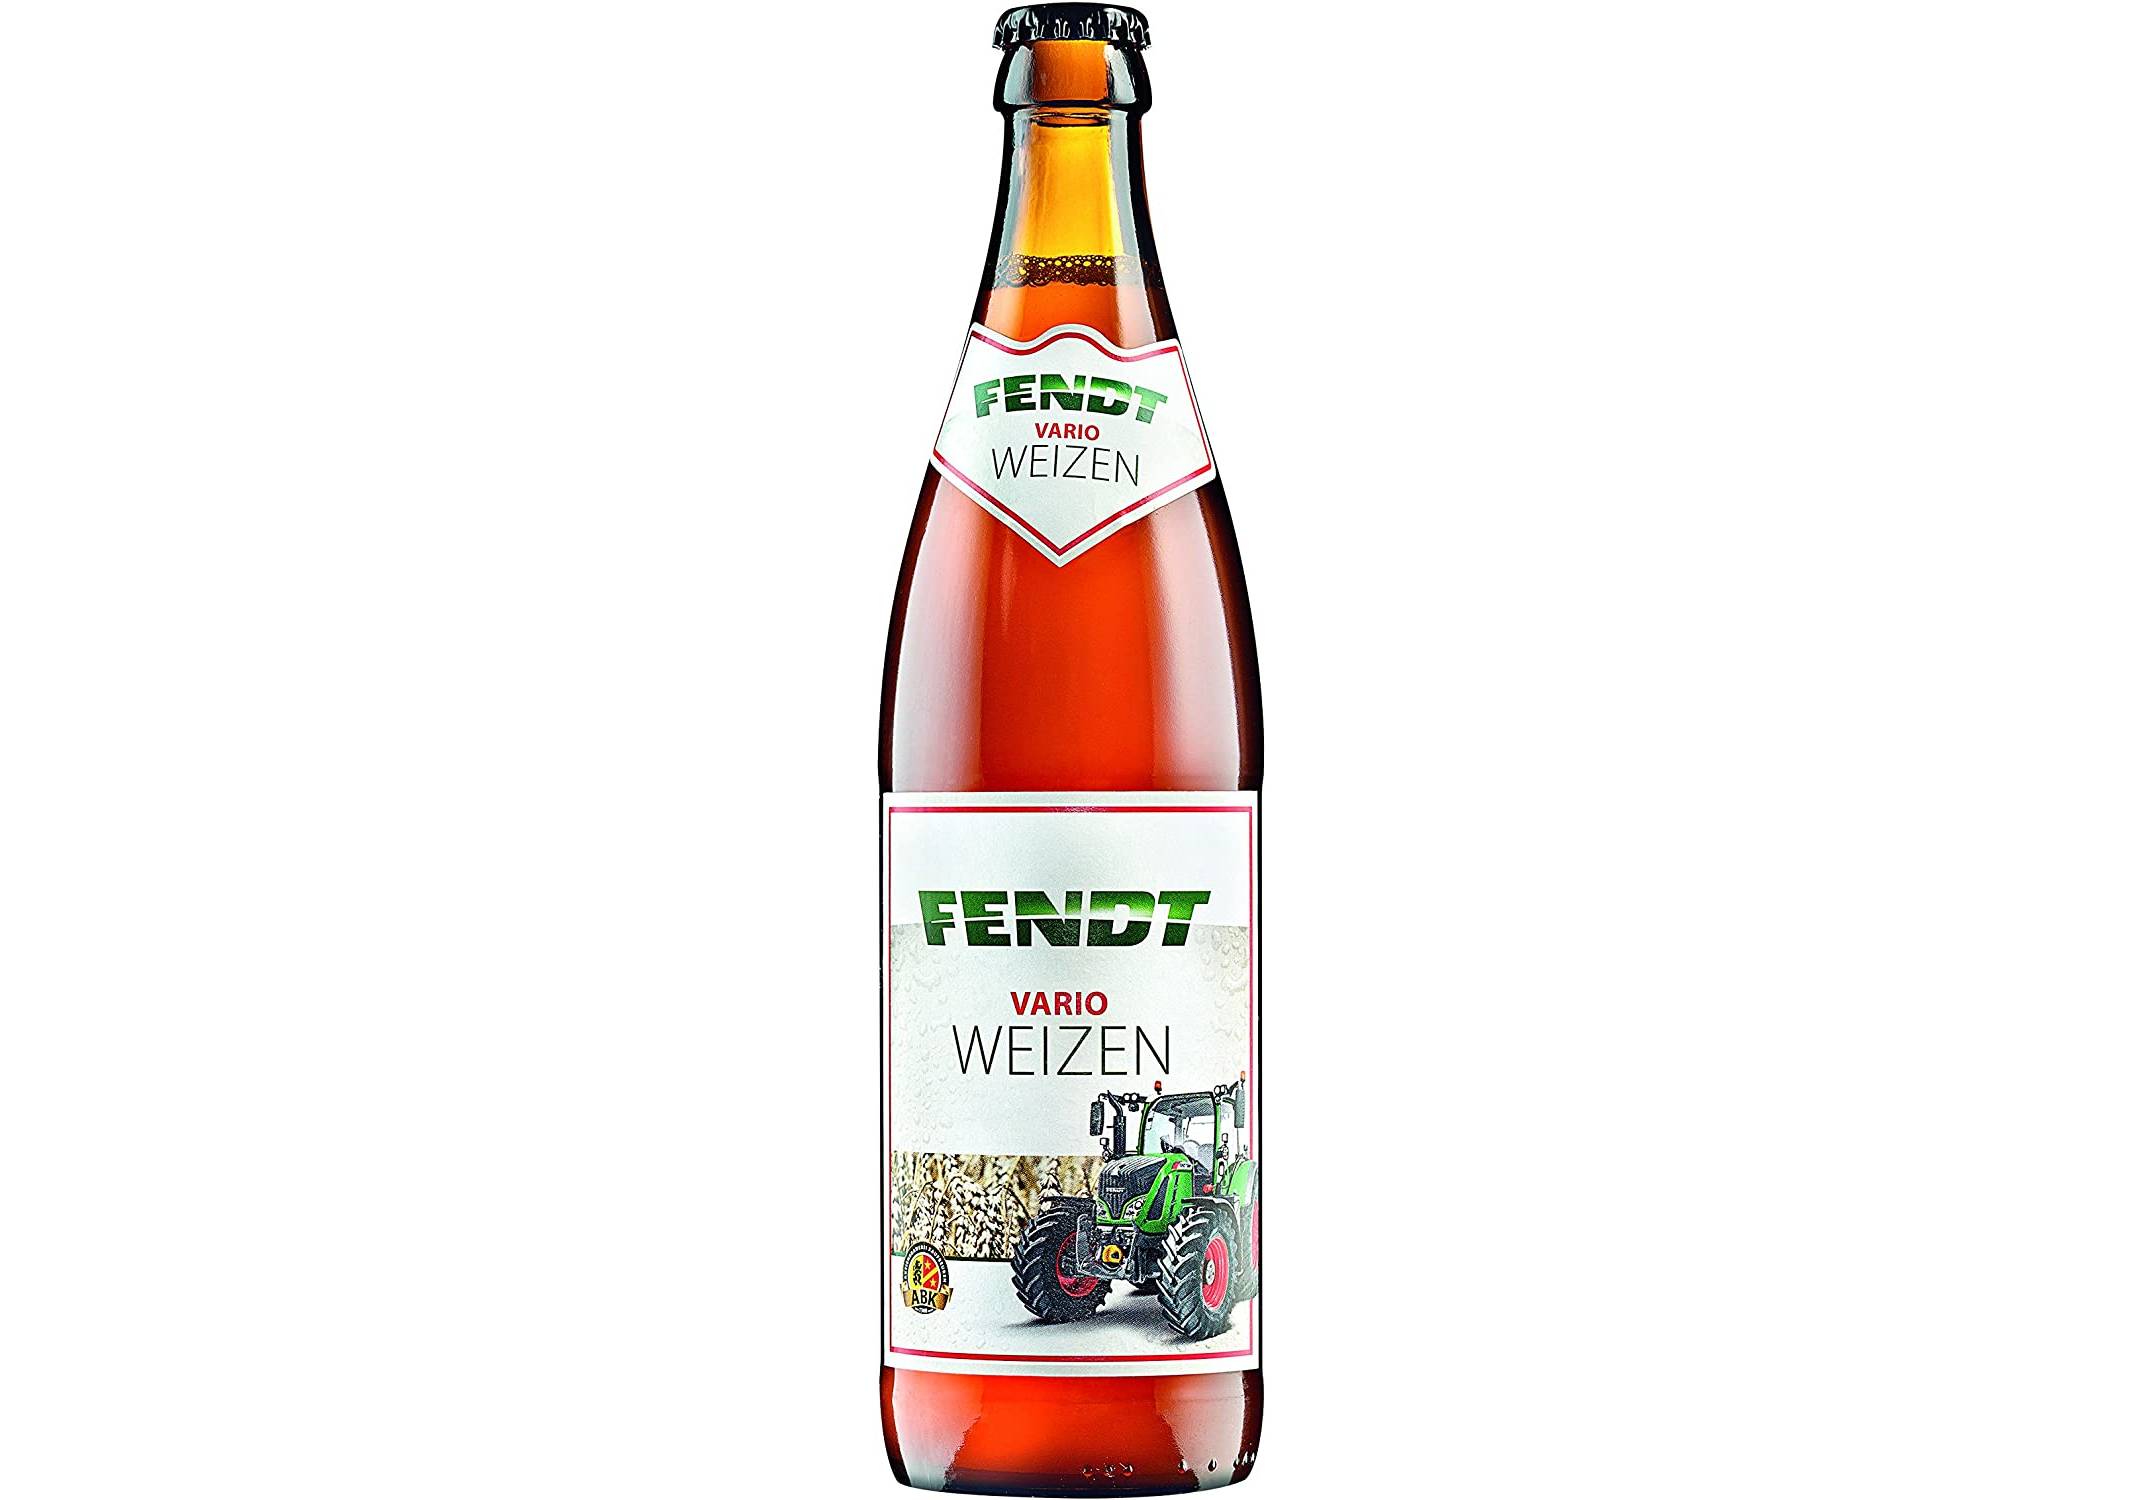 Lebensmittel & Getränke :: Bier, Wein & Spirituosen :: Bier :: Helles ::  Fendt Vario Weizen - 18 Flaschen in einem Karton -  -  Ökologische Produkte online kaufen.